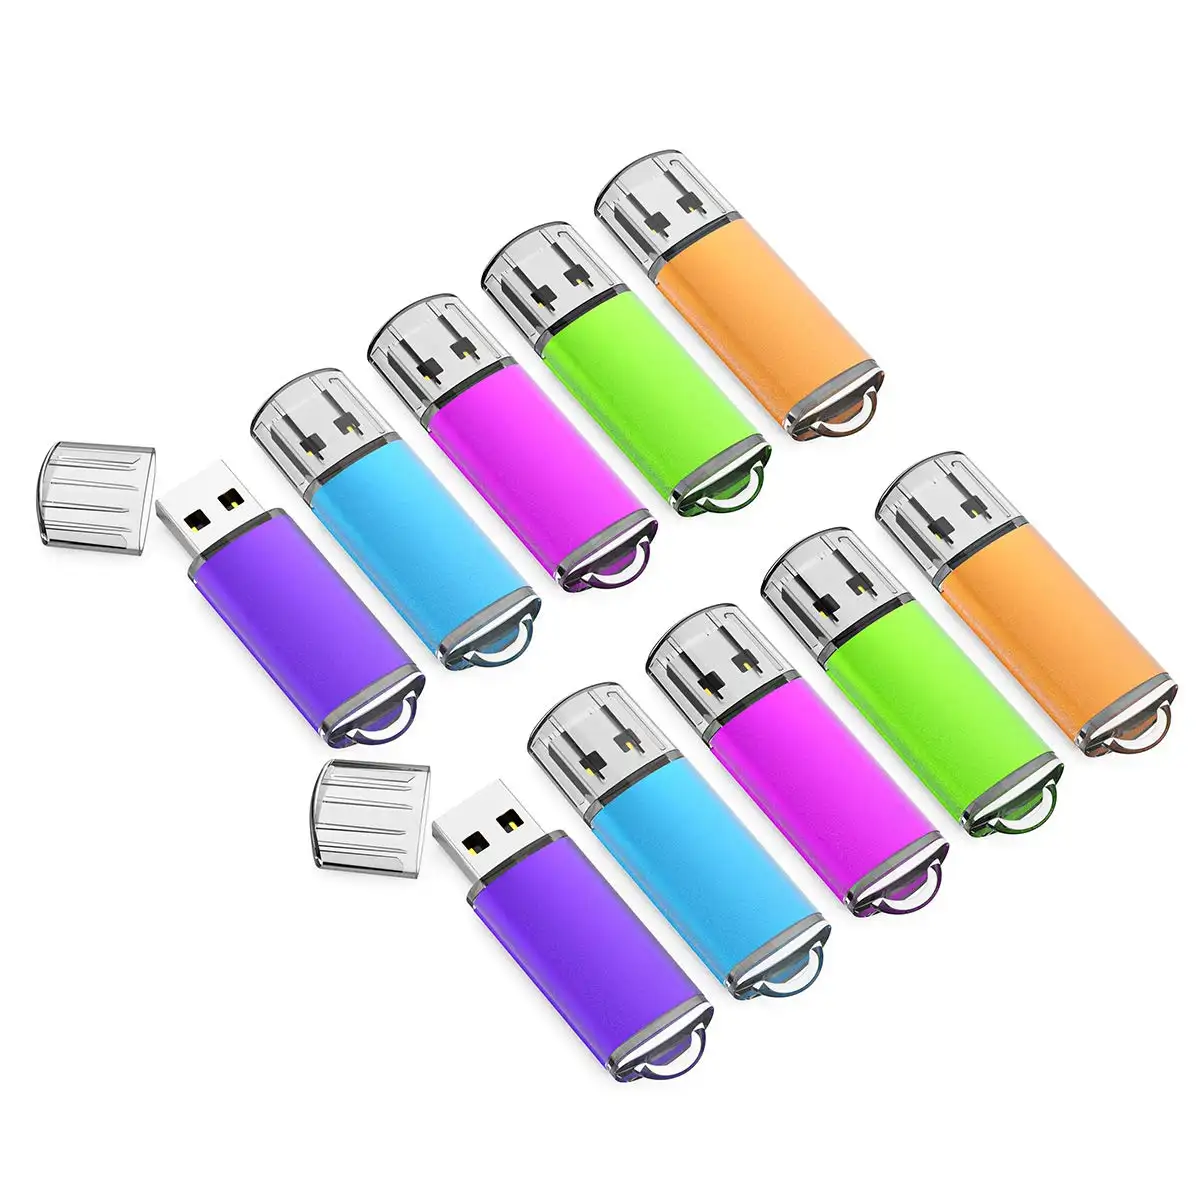 Lưu trữ bộ nhớ memorias USB Đĩa 32 GB 64GB ngón tay cái Ổ đĩa cap Pendrive thiết kế USB Stick USB Flash Drive với LED chỉ số